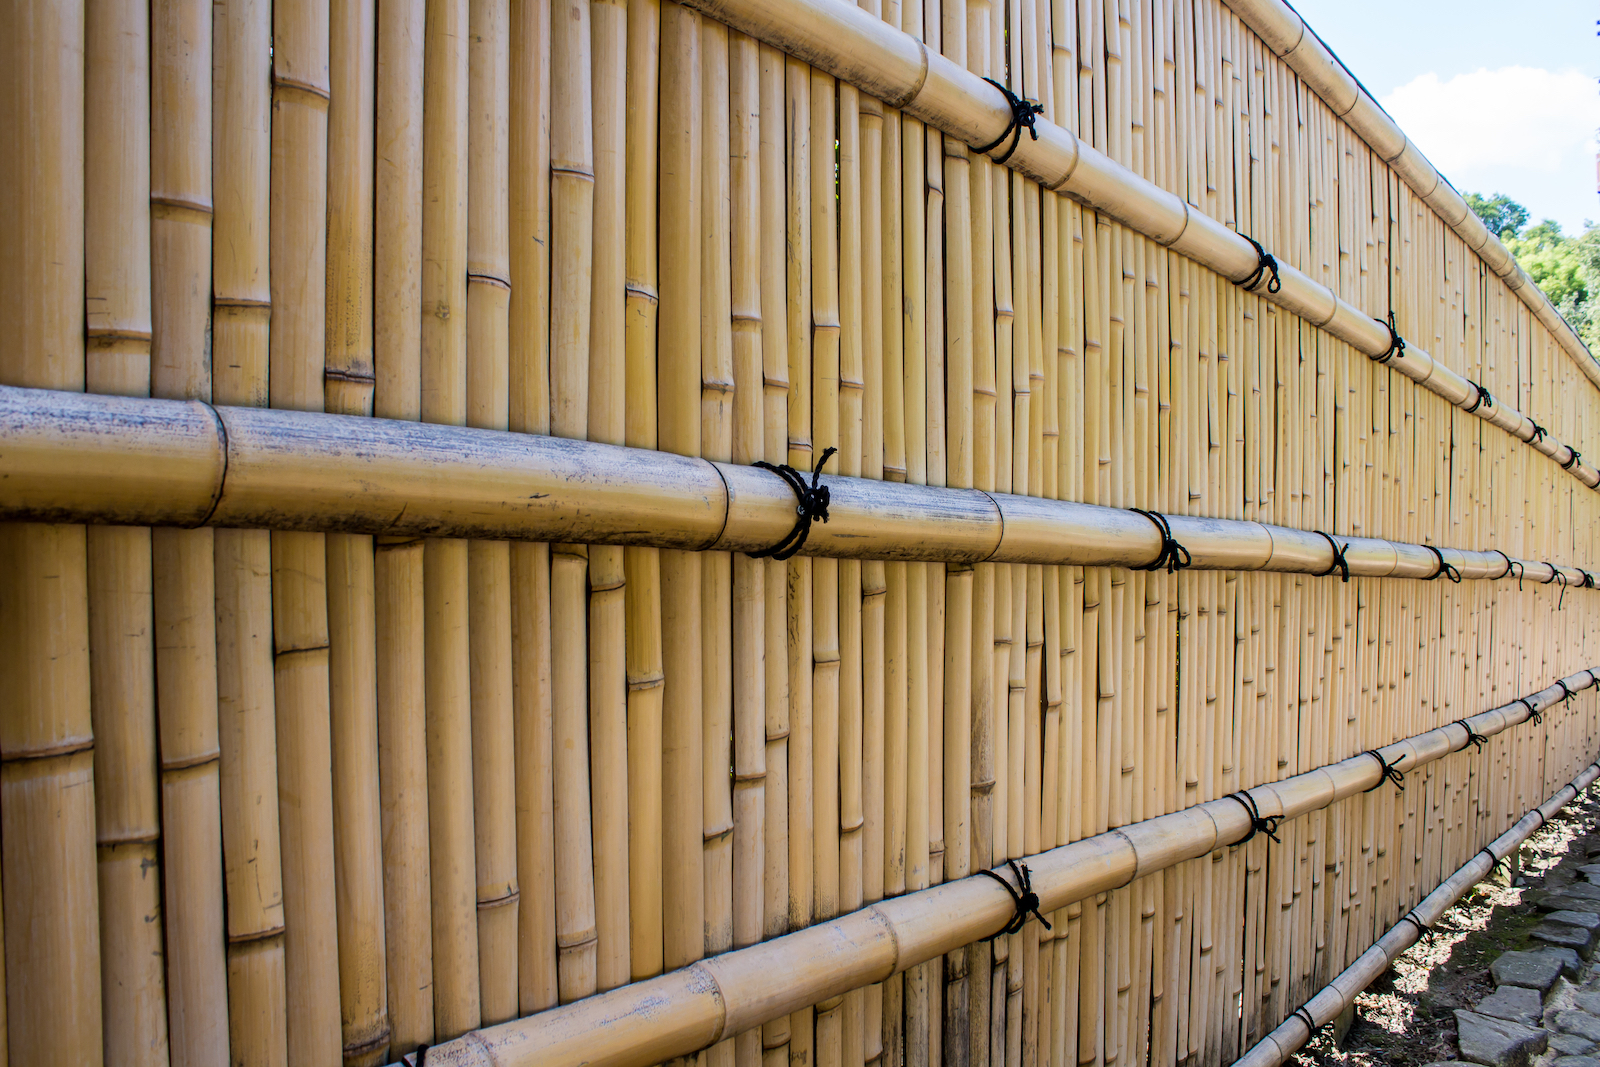 verkiezing hier Druipend Bamboe afsluiting rond je tuin? Waarop moet je letten?